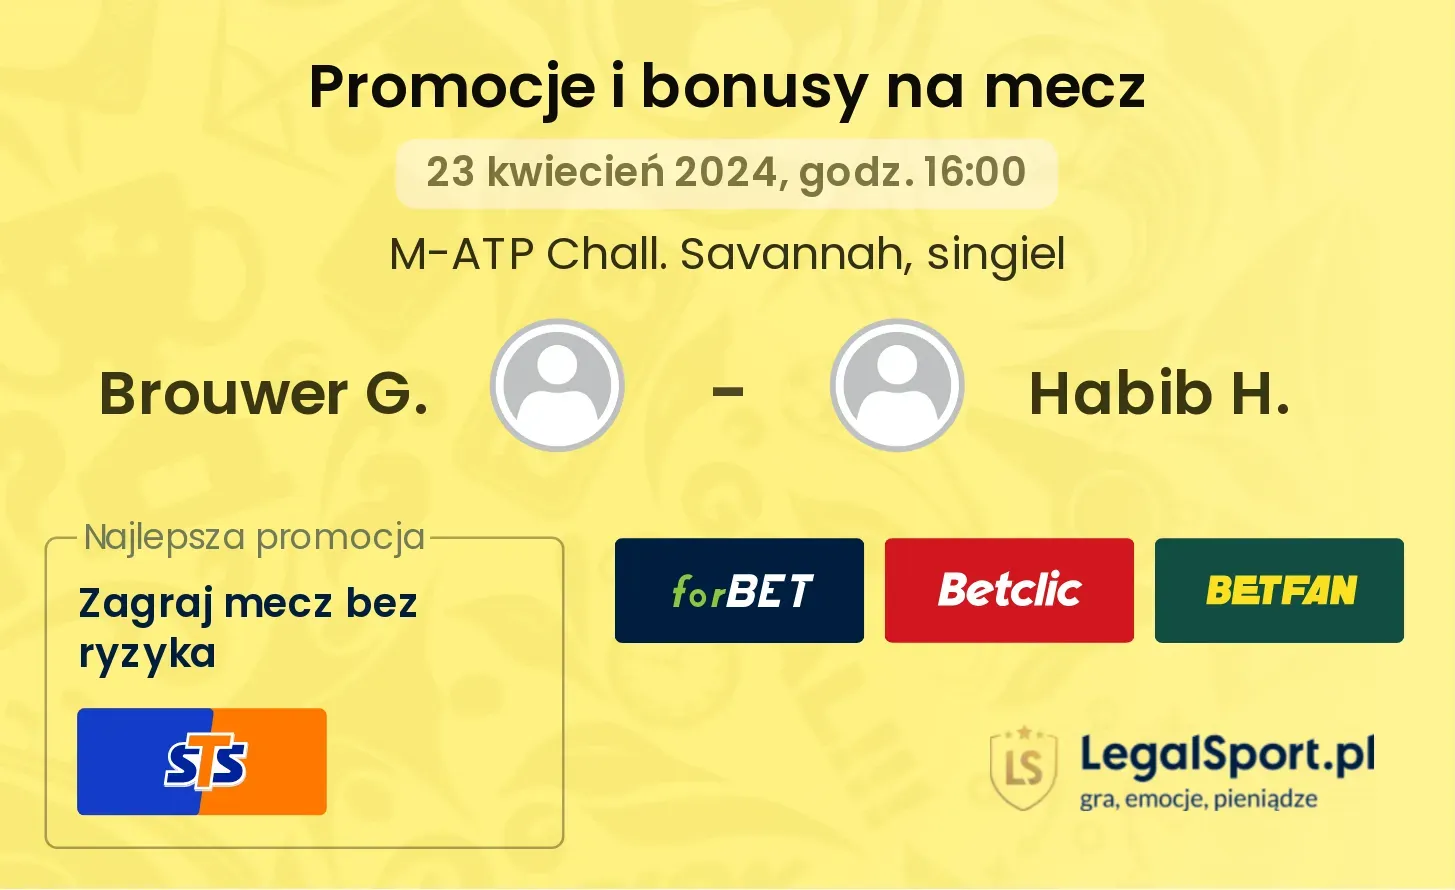 Brouwer G. - Habib H. promocje bonusy na mecz